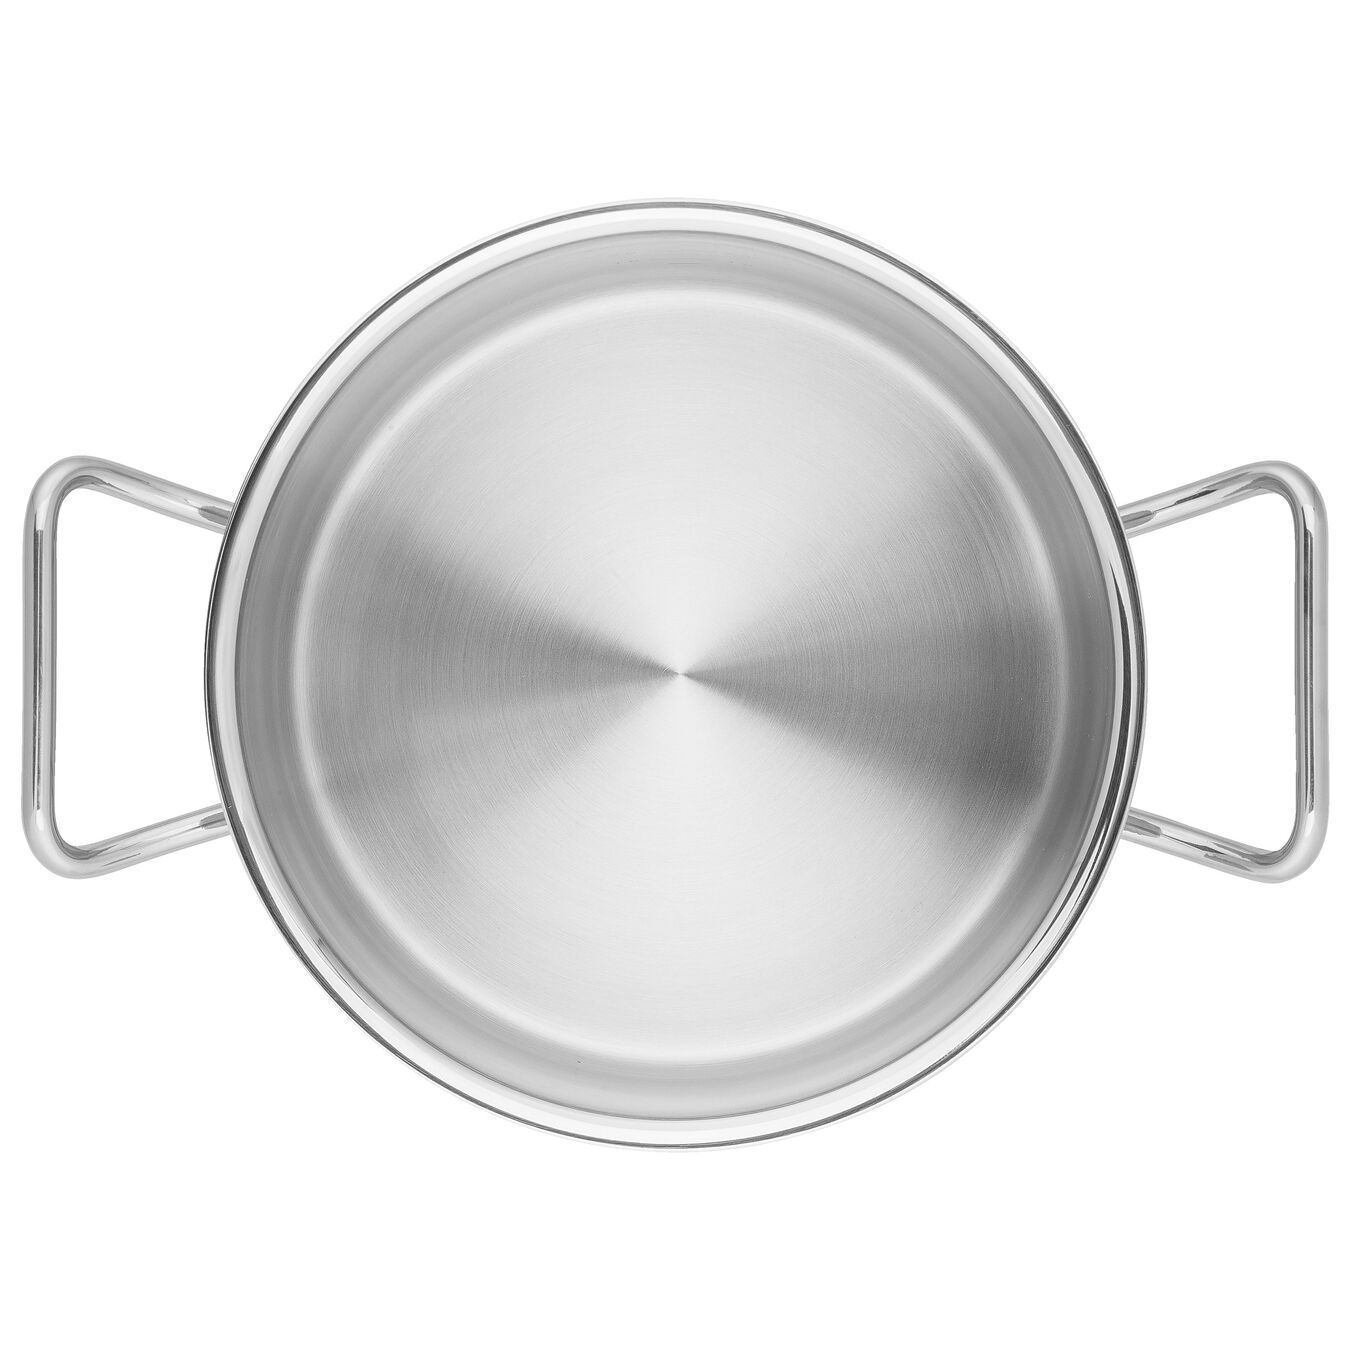 24 cm Serving pan,,large 4